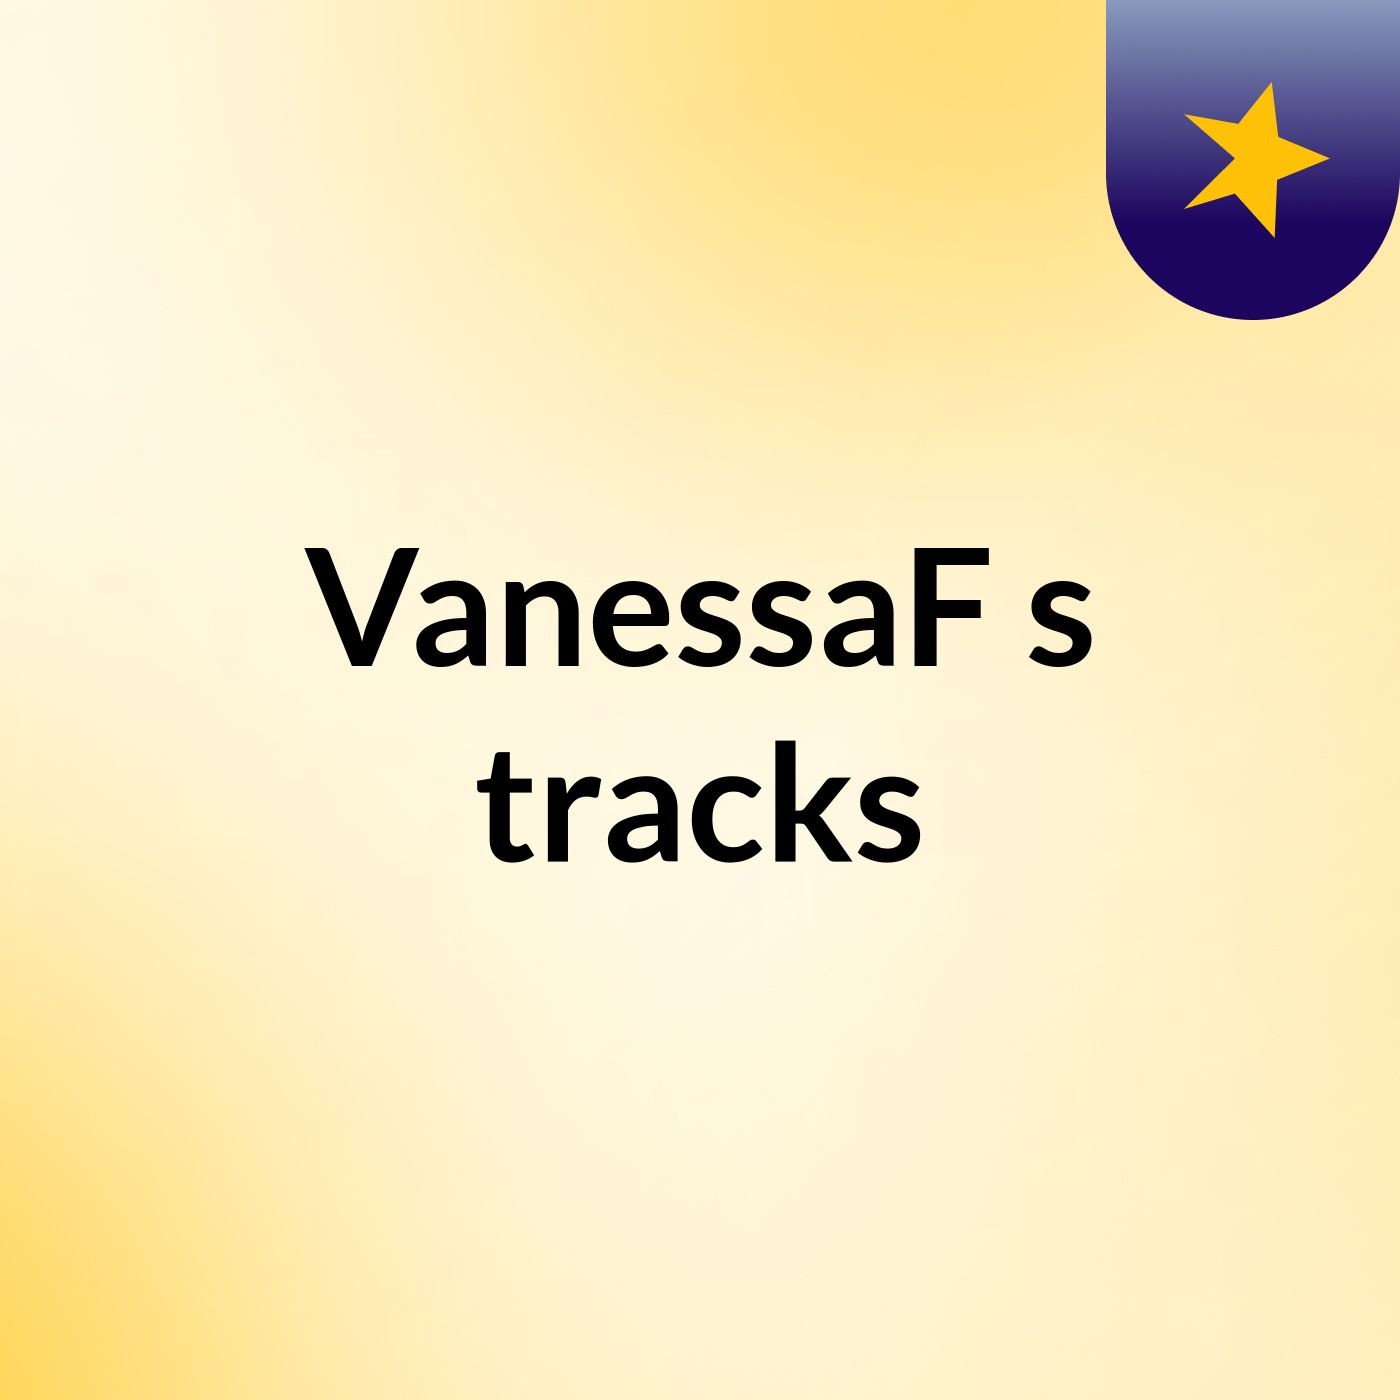 VanessaF's tracks